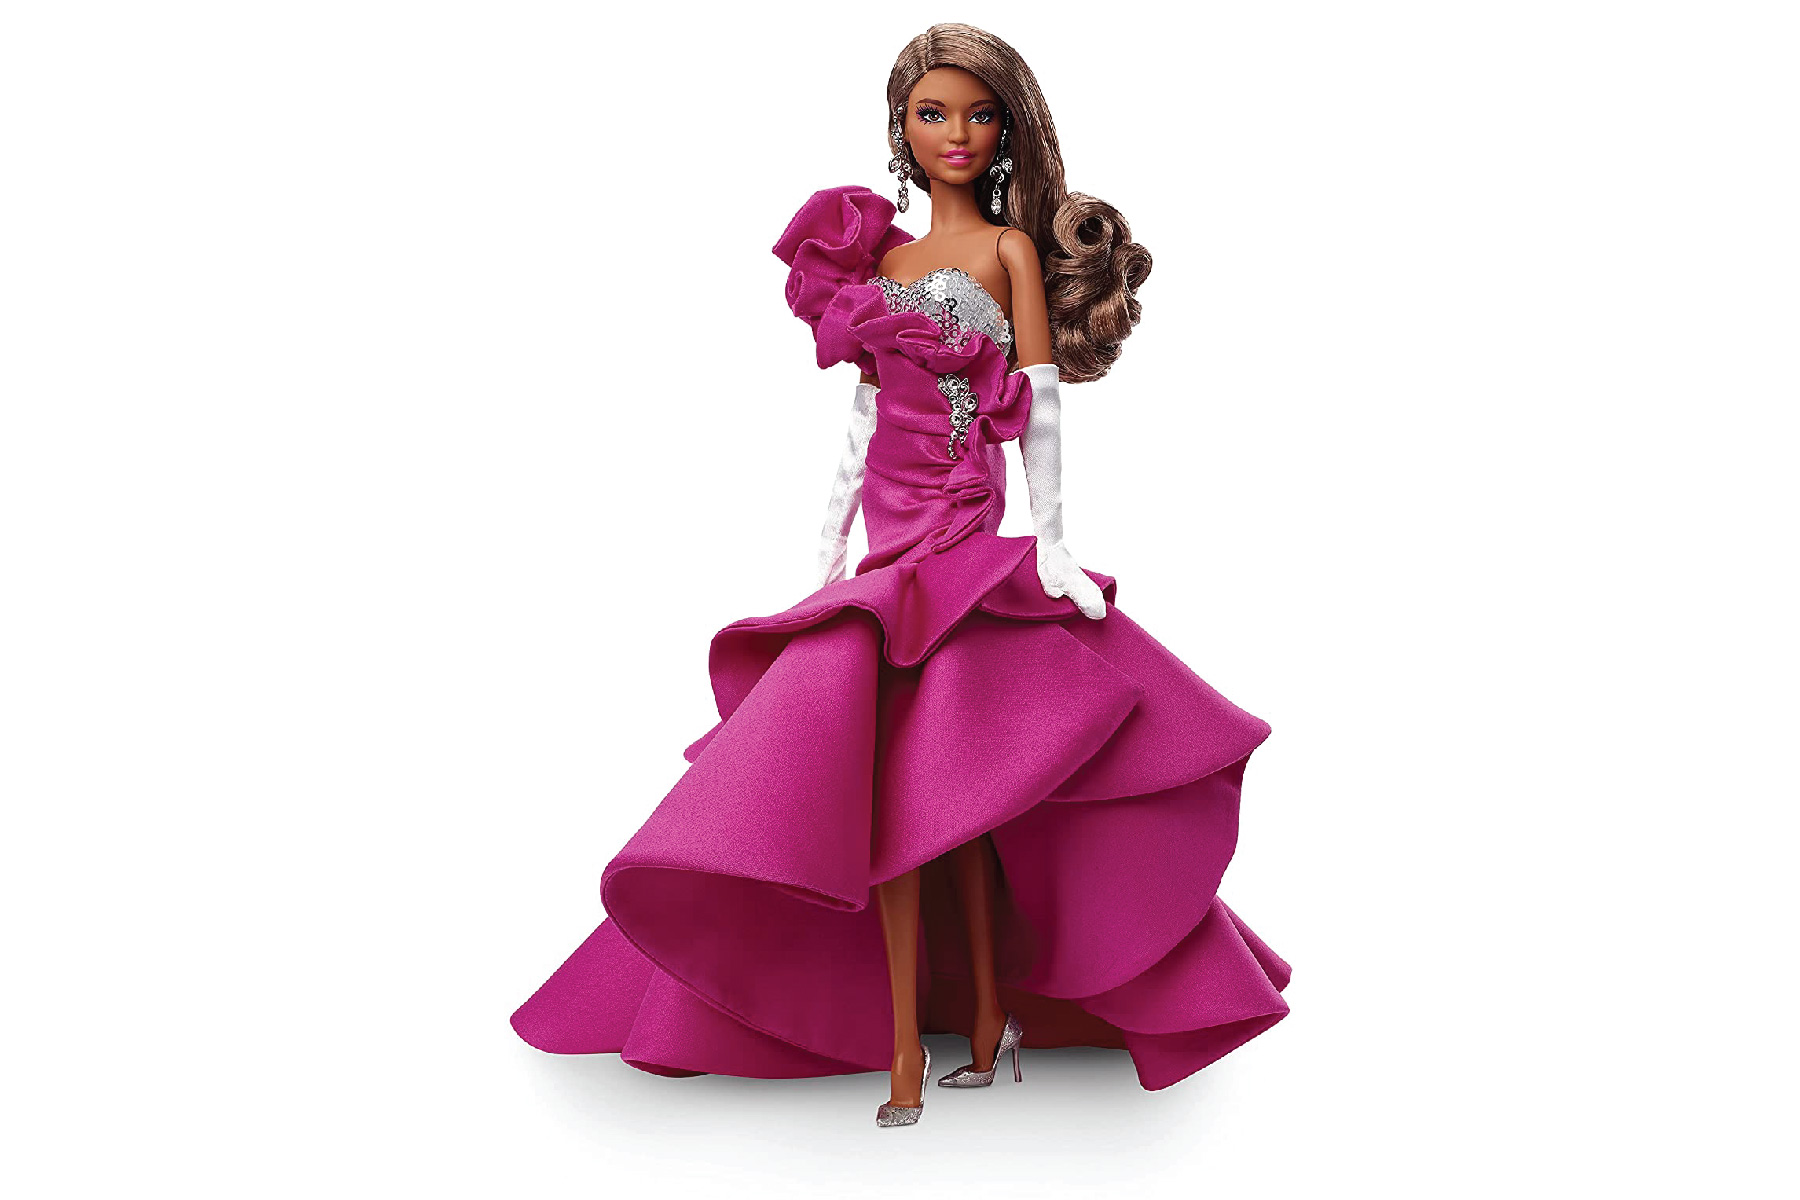 Barbie doll-11 1800 X 1200-d0571327